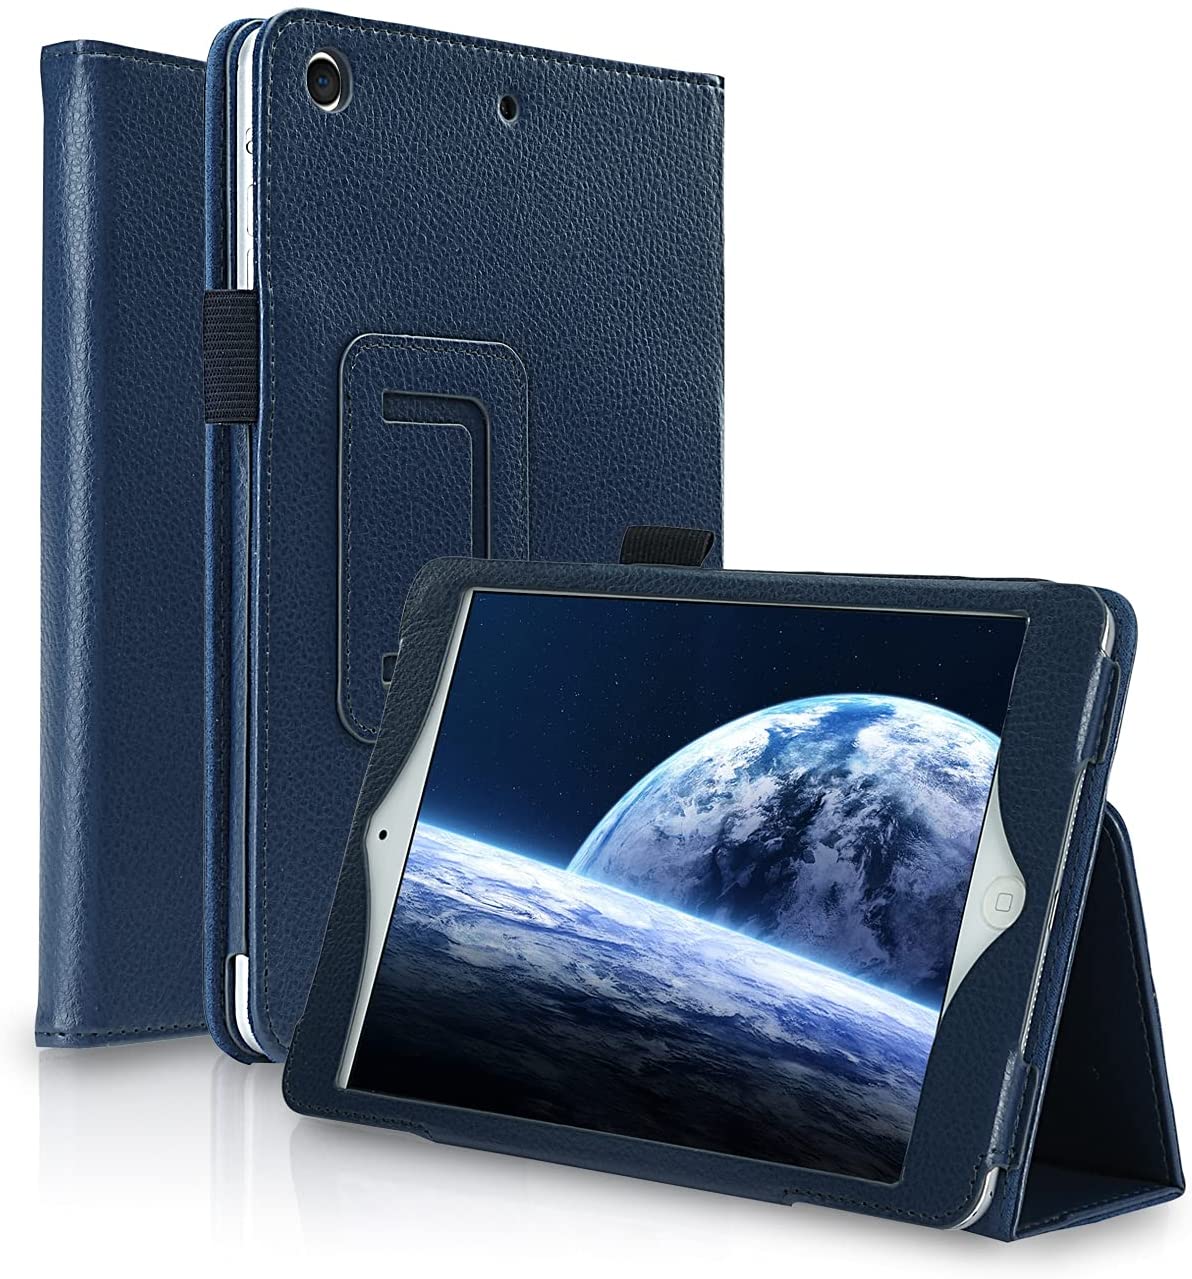 Moko iPad Pro 12.9 2017/2015 Case (Old Model)  -  NAVY BLUE - e4cents